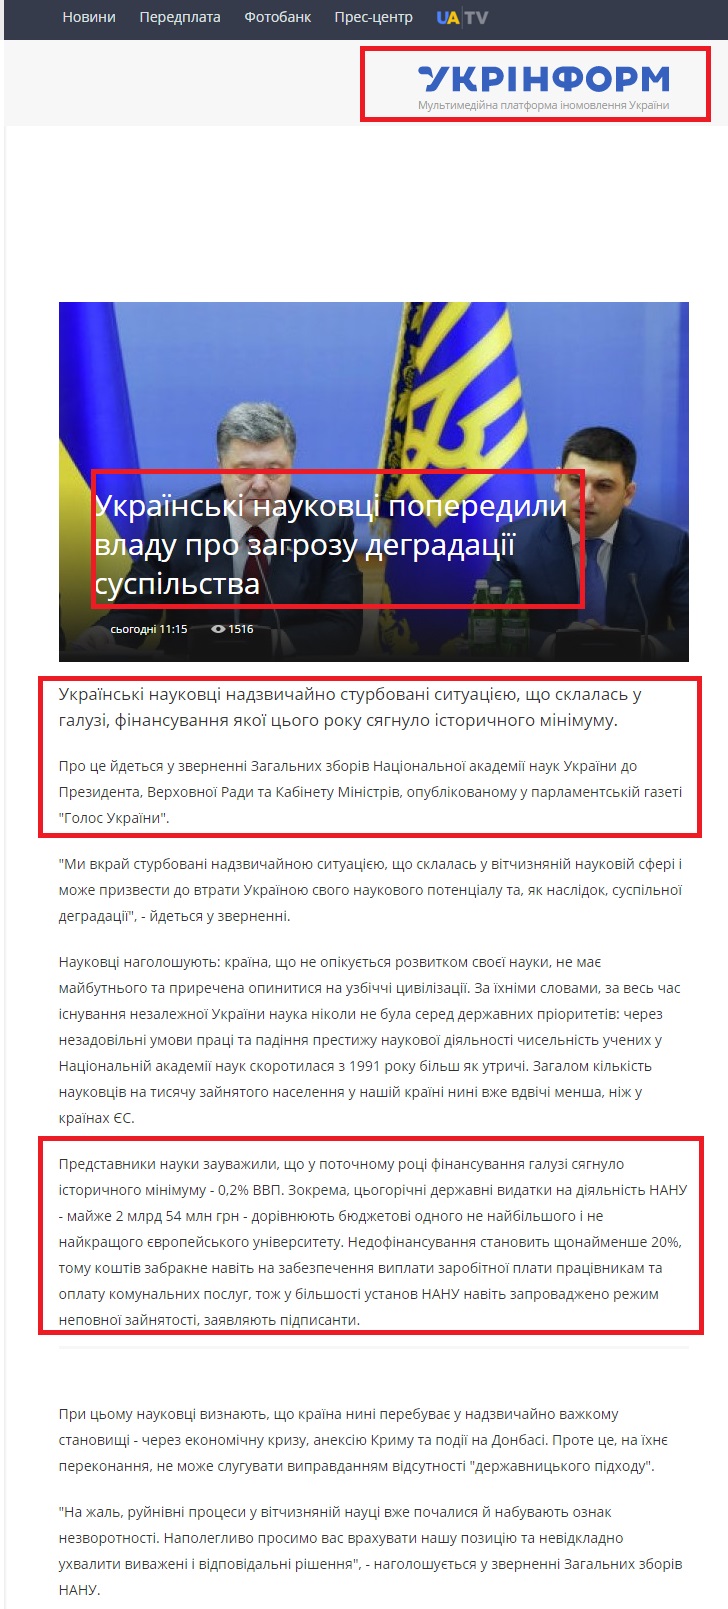 http://www.ukrinform.ua/rubric-society/2002804-ukrainski-naukovci-poperedili-vladu-pro-zagrozu-degradacii-suspilstva.html